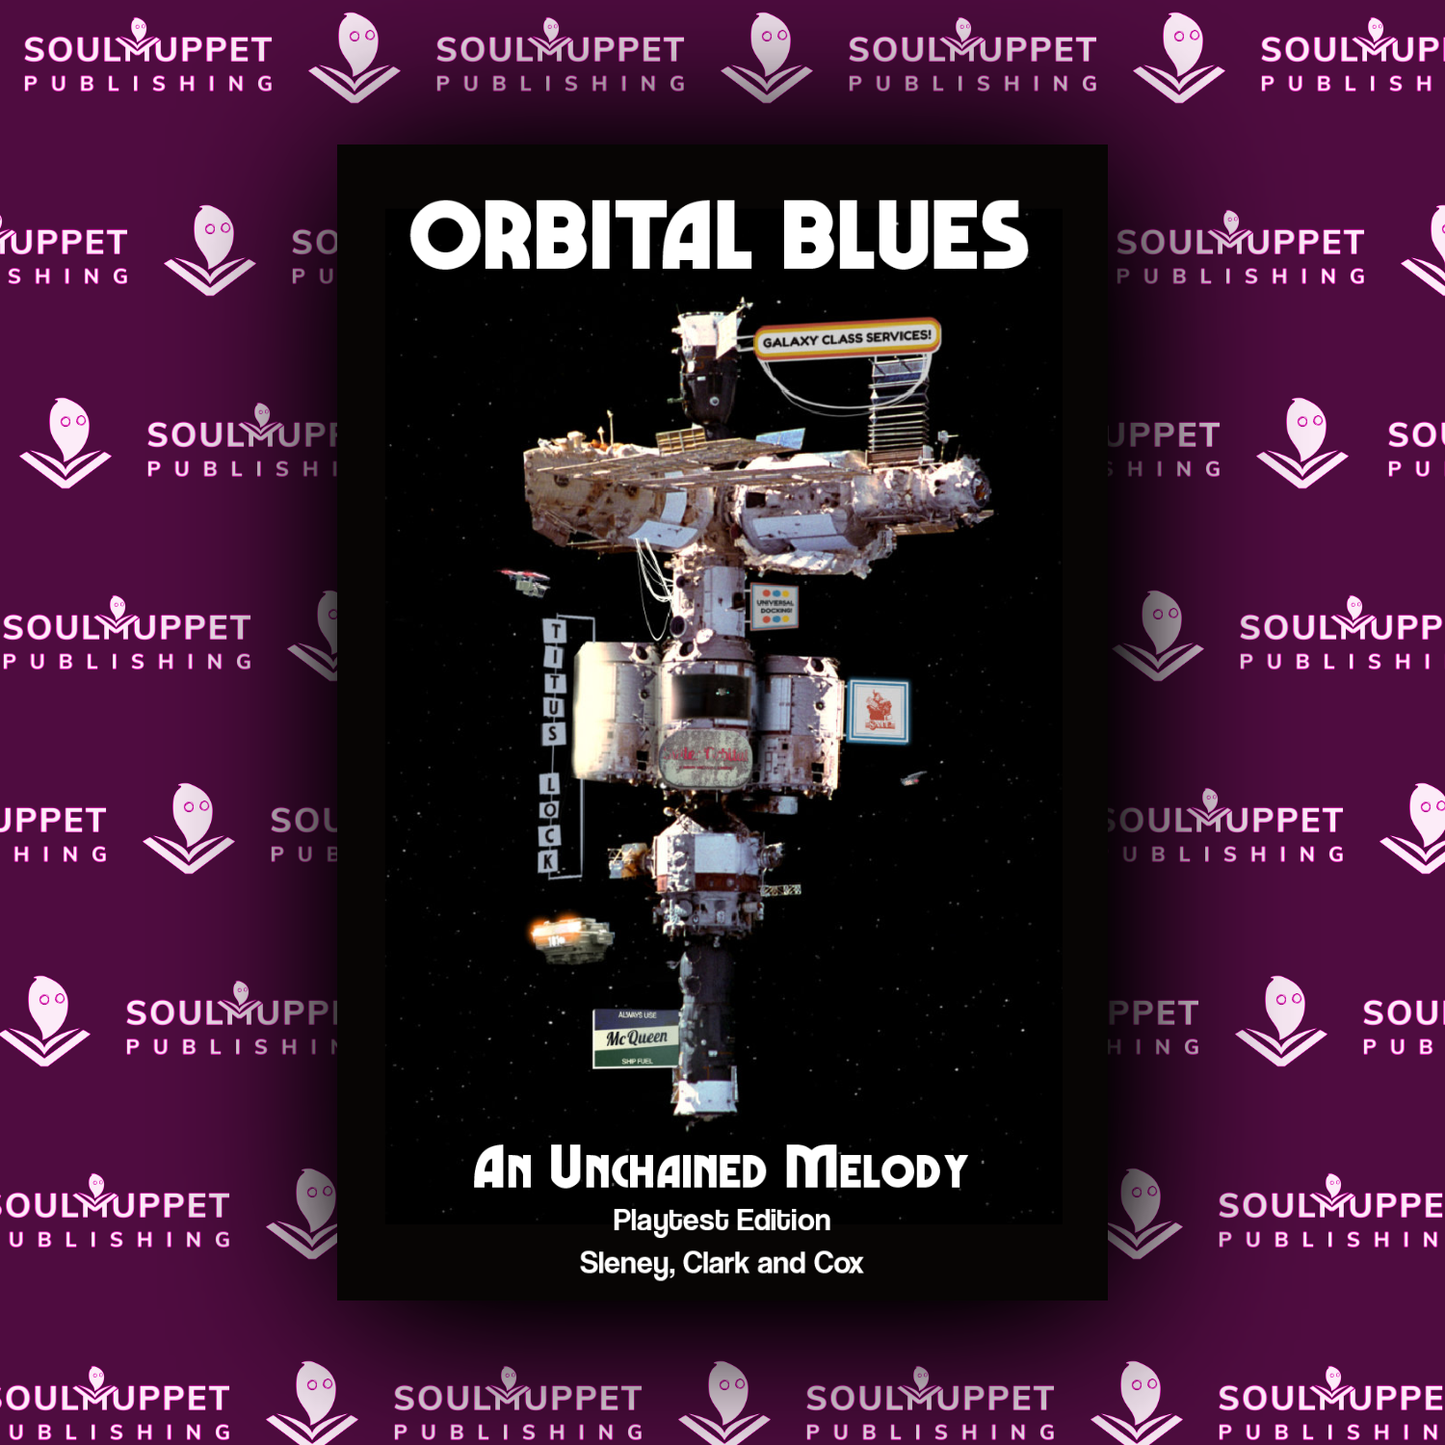 Orbital Blues Quickstart - An Unchained Melody